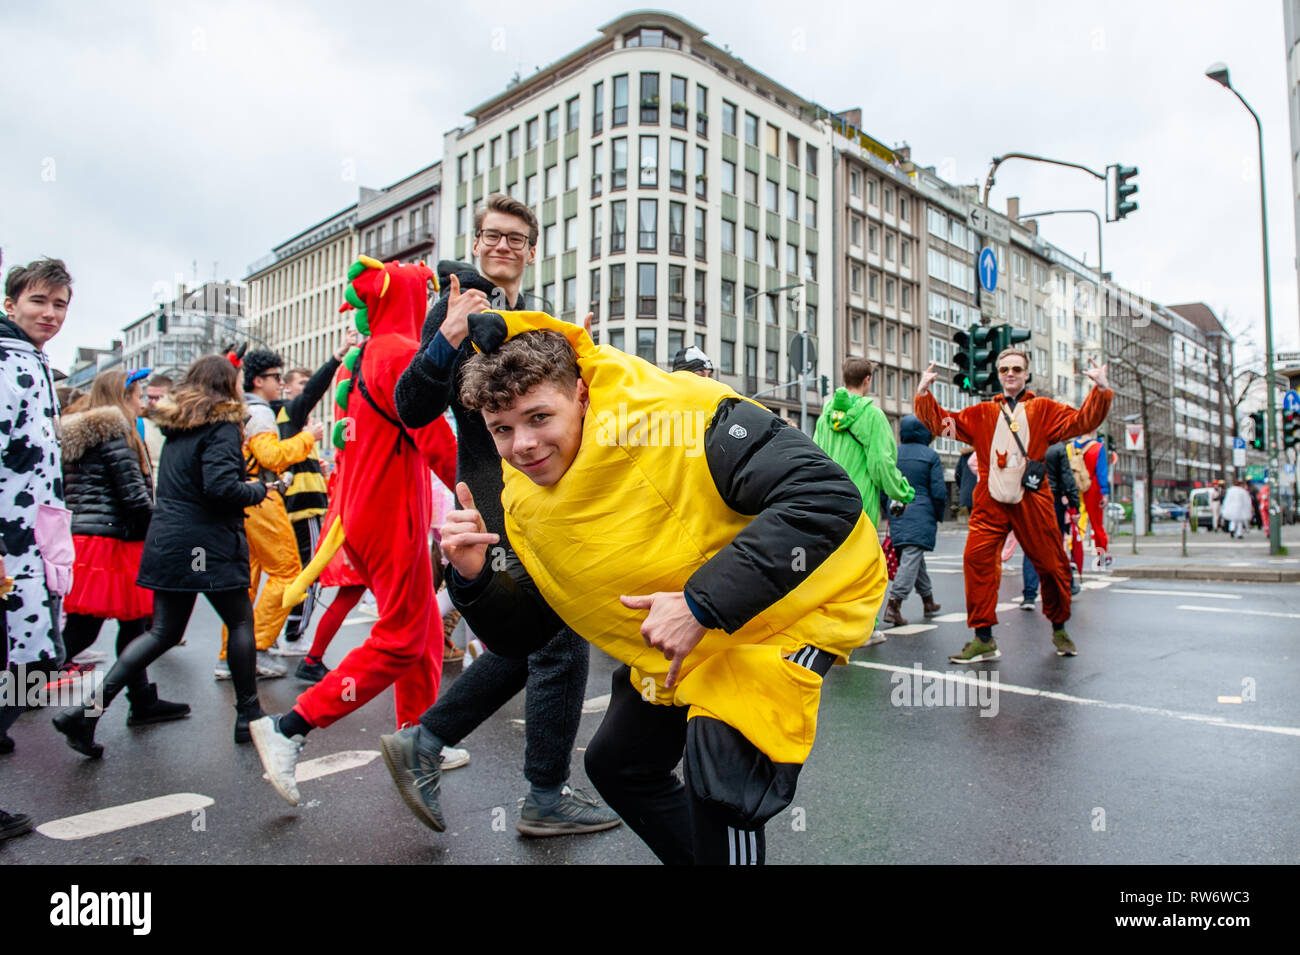 Leute gesehen, Kostüme zu Fuß auf den Straßen während der Parade. In Düsseldorf, der Kalender der Karneval Veranstaltungen verfügt über nicht weniger als 300 Karneval zeigt, Bälle, Jubiläen, Empfänge und Kostüm Parteien. Das Motto dieser Saison ist "Gemeinsam Jeck" (gemeinsam Karneval). Die Feierlichkeiten ihren Höhepunkt in der Rose Montag Parade. Mehr als 30 Ensembles und 5.000 Teilnehmer an der Prozession durch die Stadt. Aufwändig gebaut und geschmückten Wagen Adresse kulturellen und politischen Fragen und Satirischen, lustigen und auch umstritten. Die politisch themed schwimmt der Satiriker Stockfoto